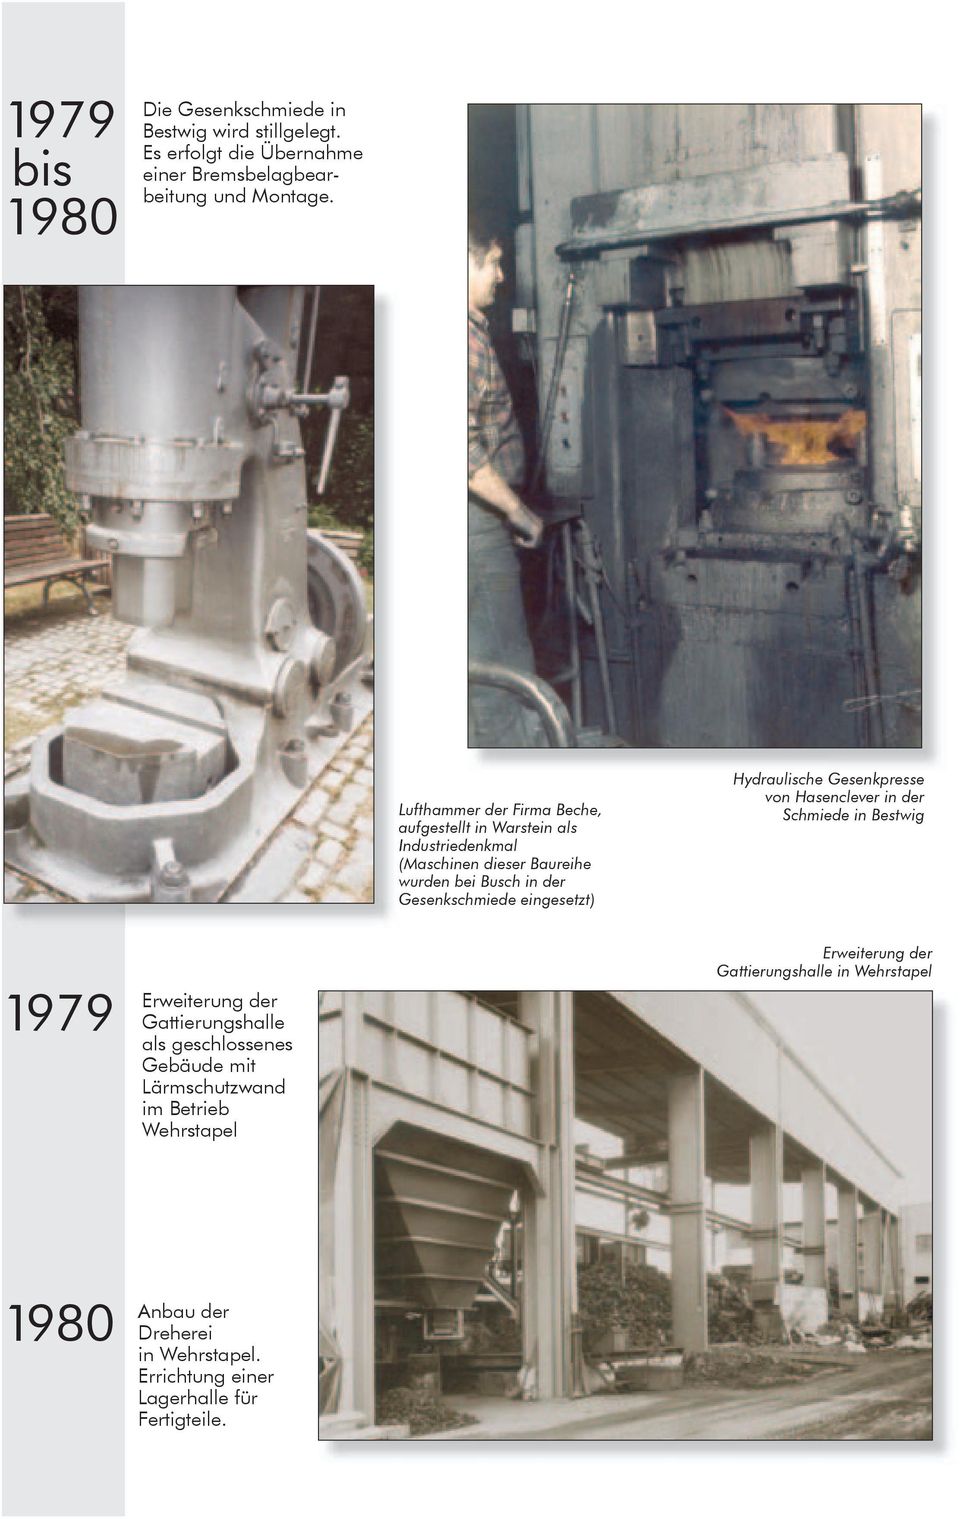 eingesetzt) Hydraulische Gesenkpresse von Hasenclever in der Schmiede in Bestwig 1979 Erweiterung der Gattierungshalle als geschlossenes Gebäude